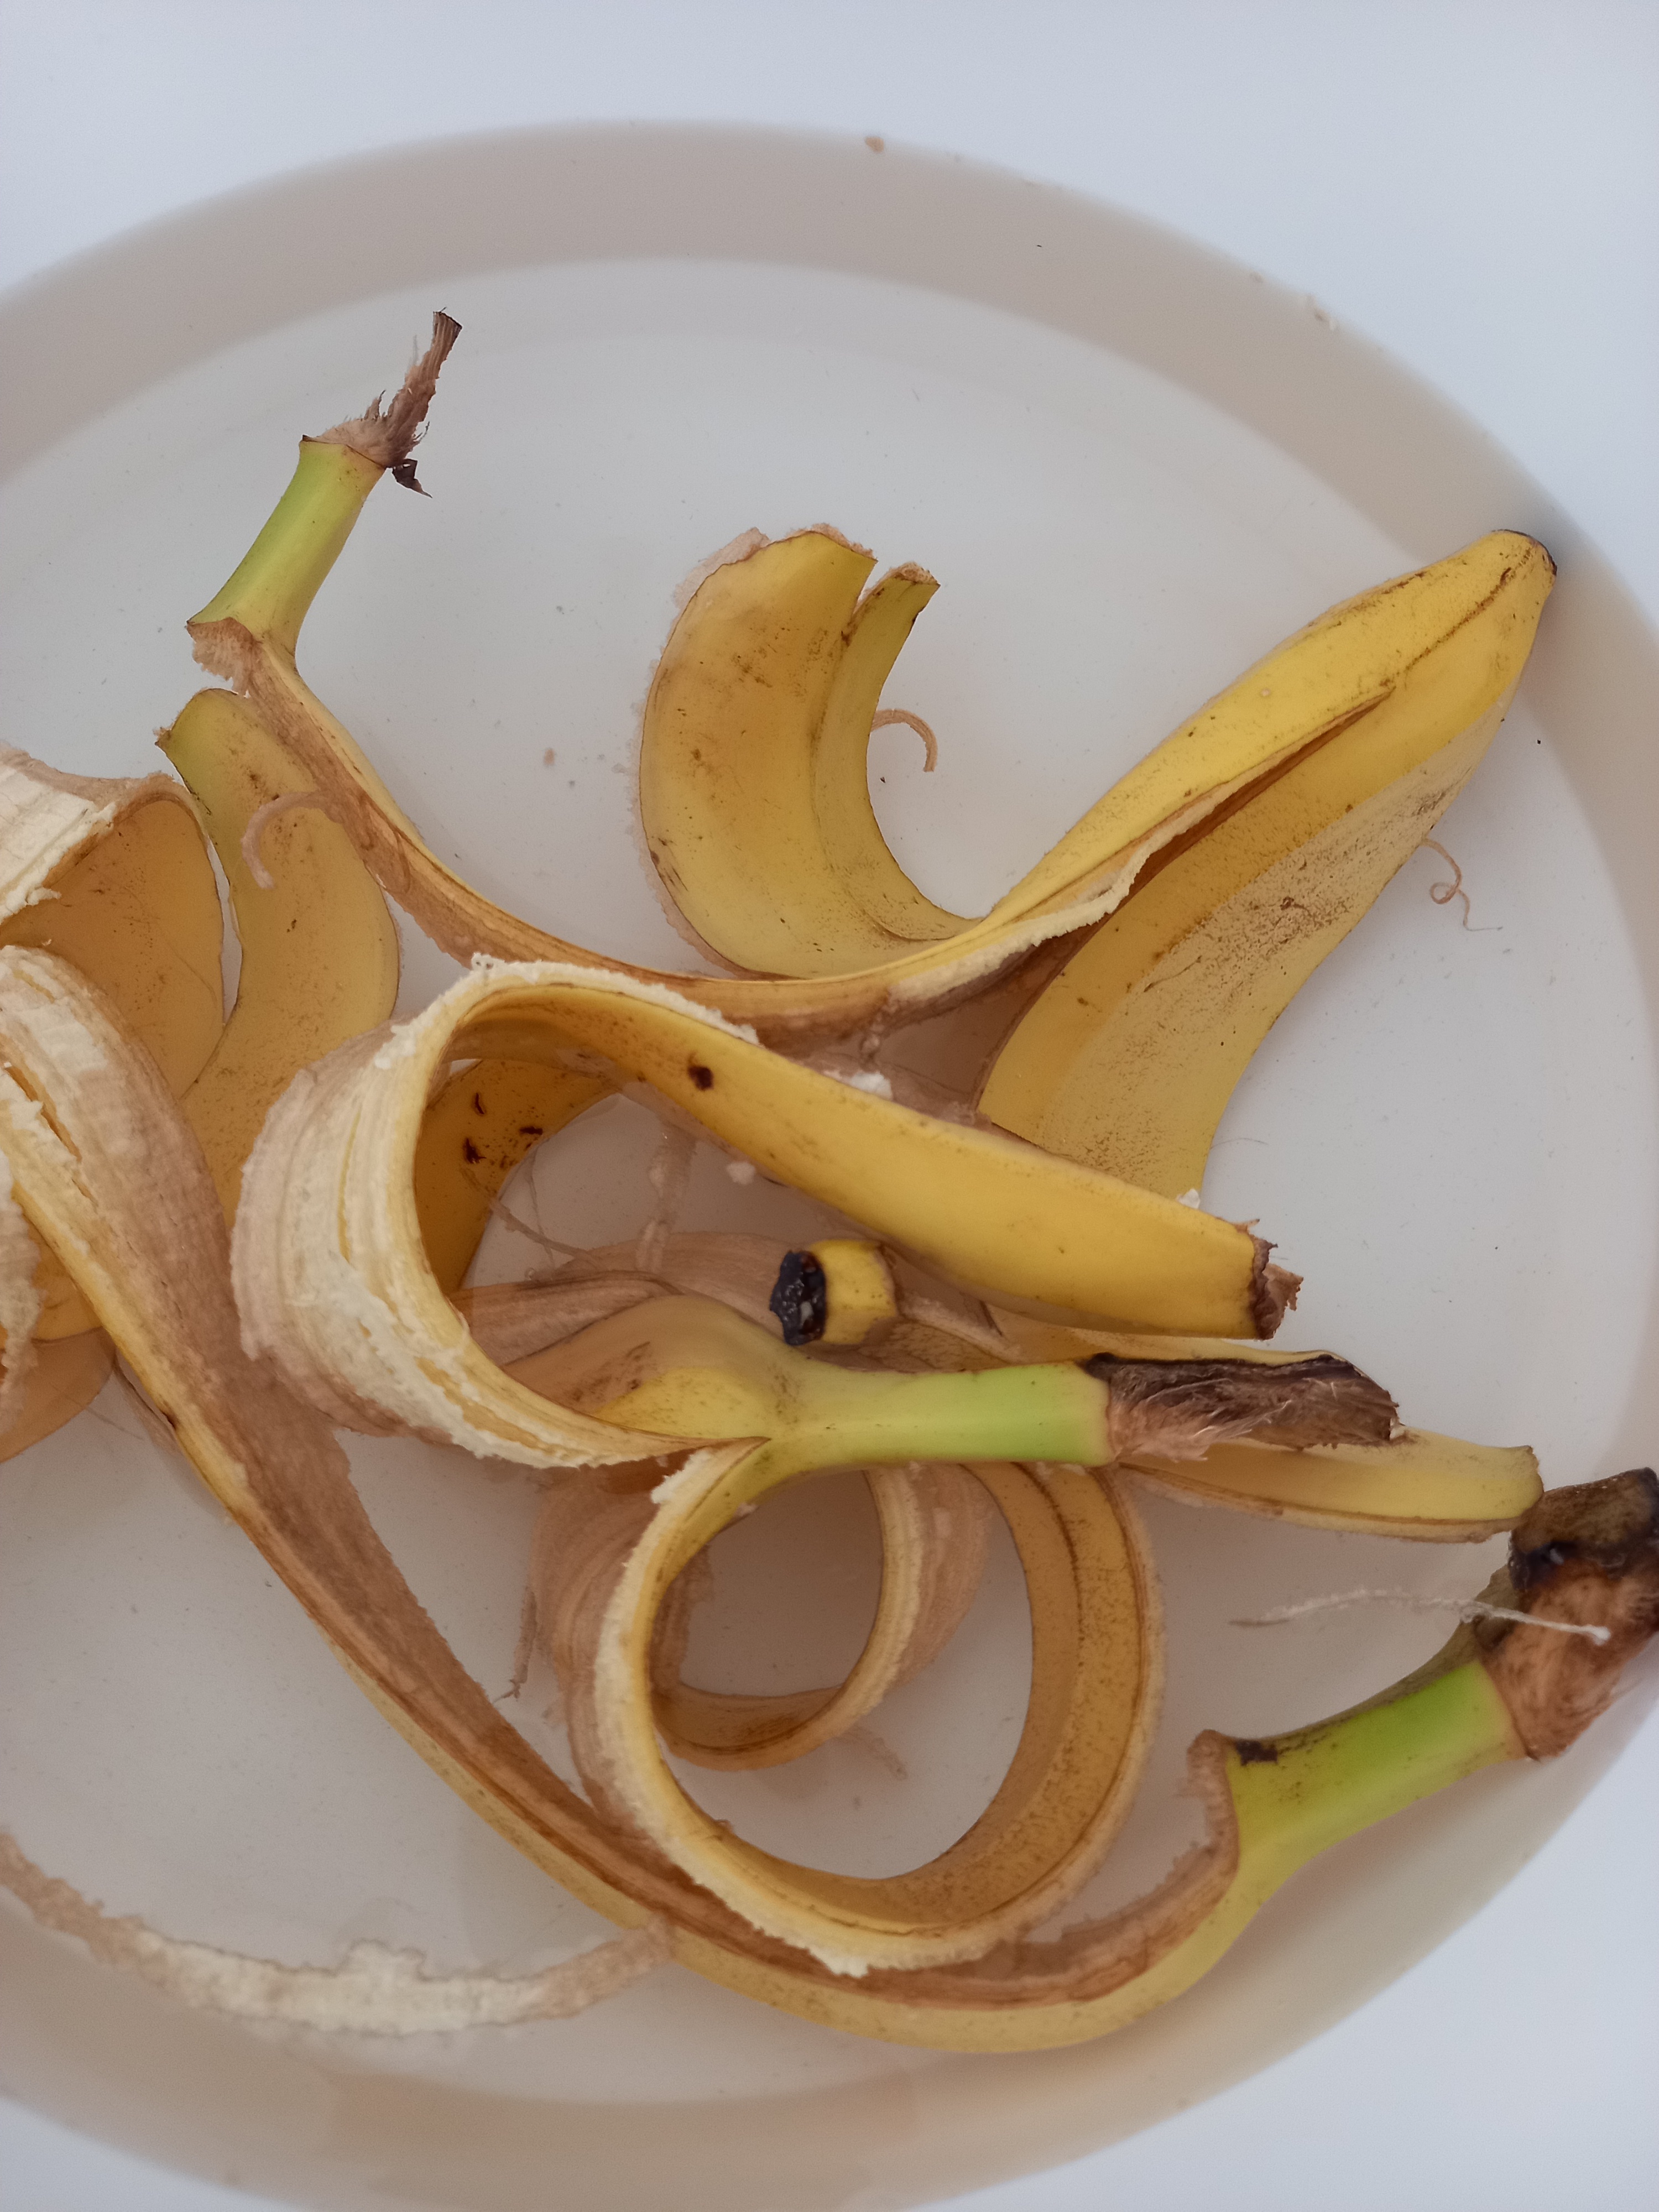 Cascas de banana para utilizar como fertilizante da horta.